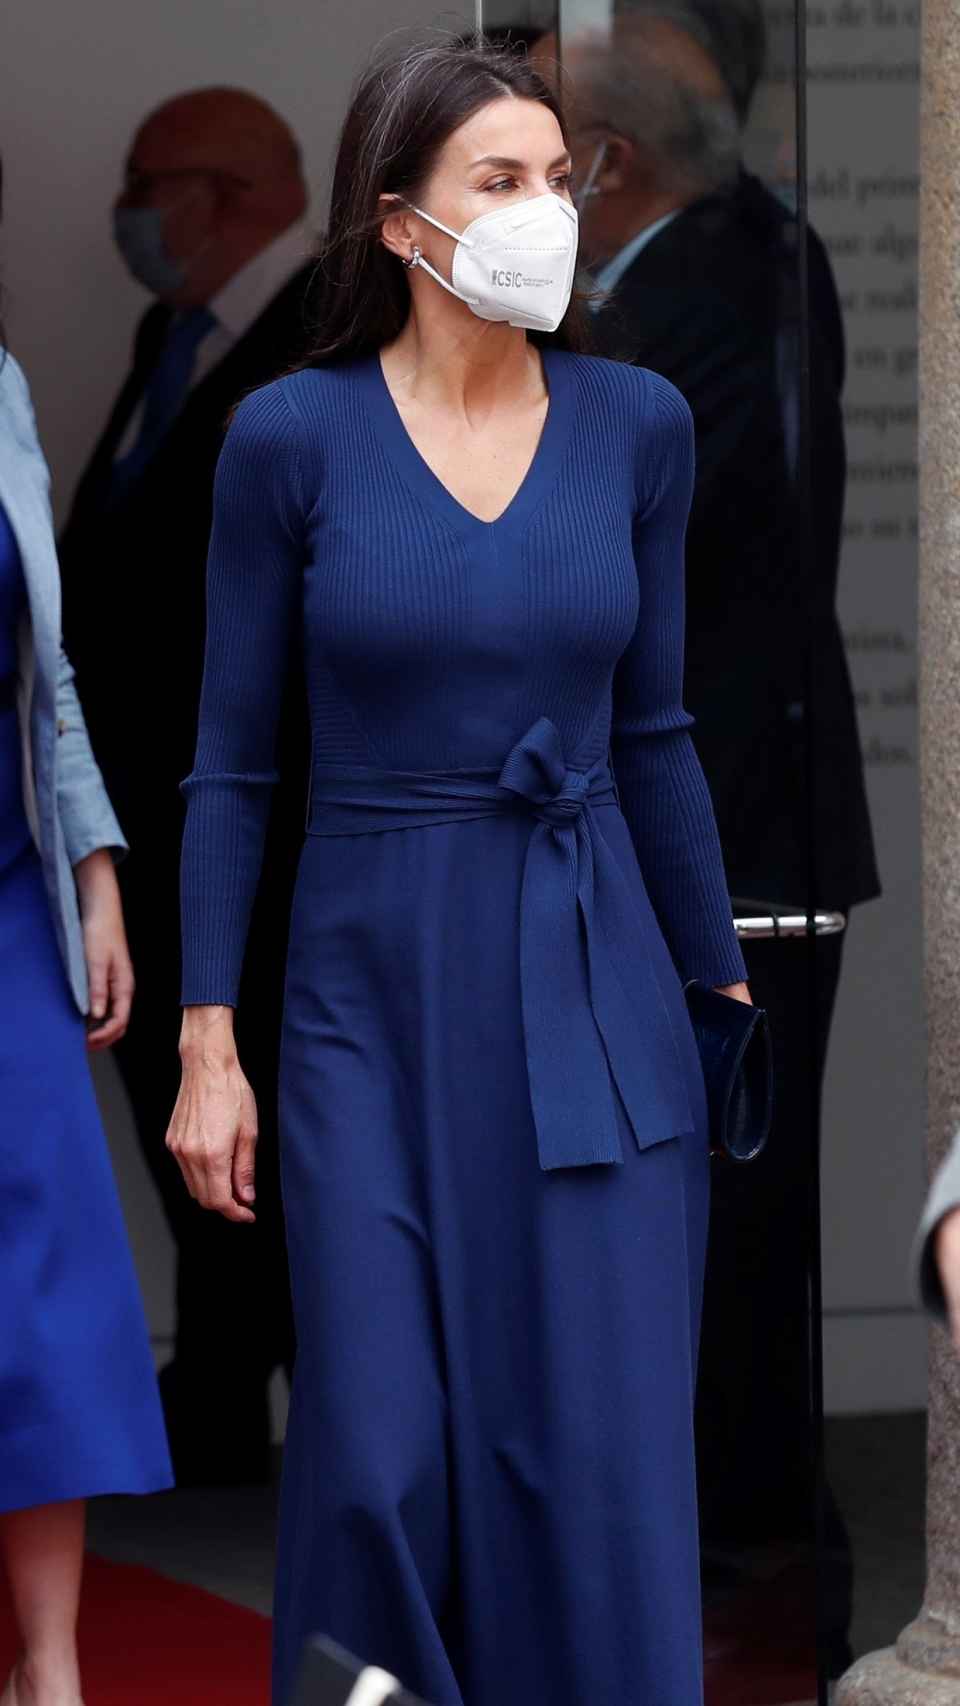 La Reina luciendo el vestido ya sin abrigo.